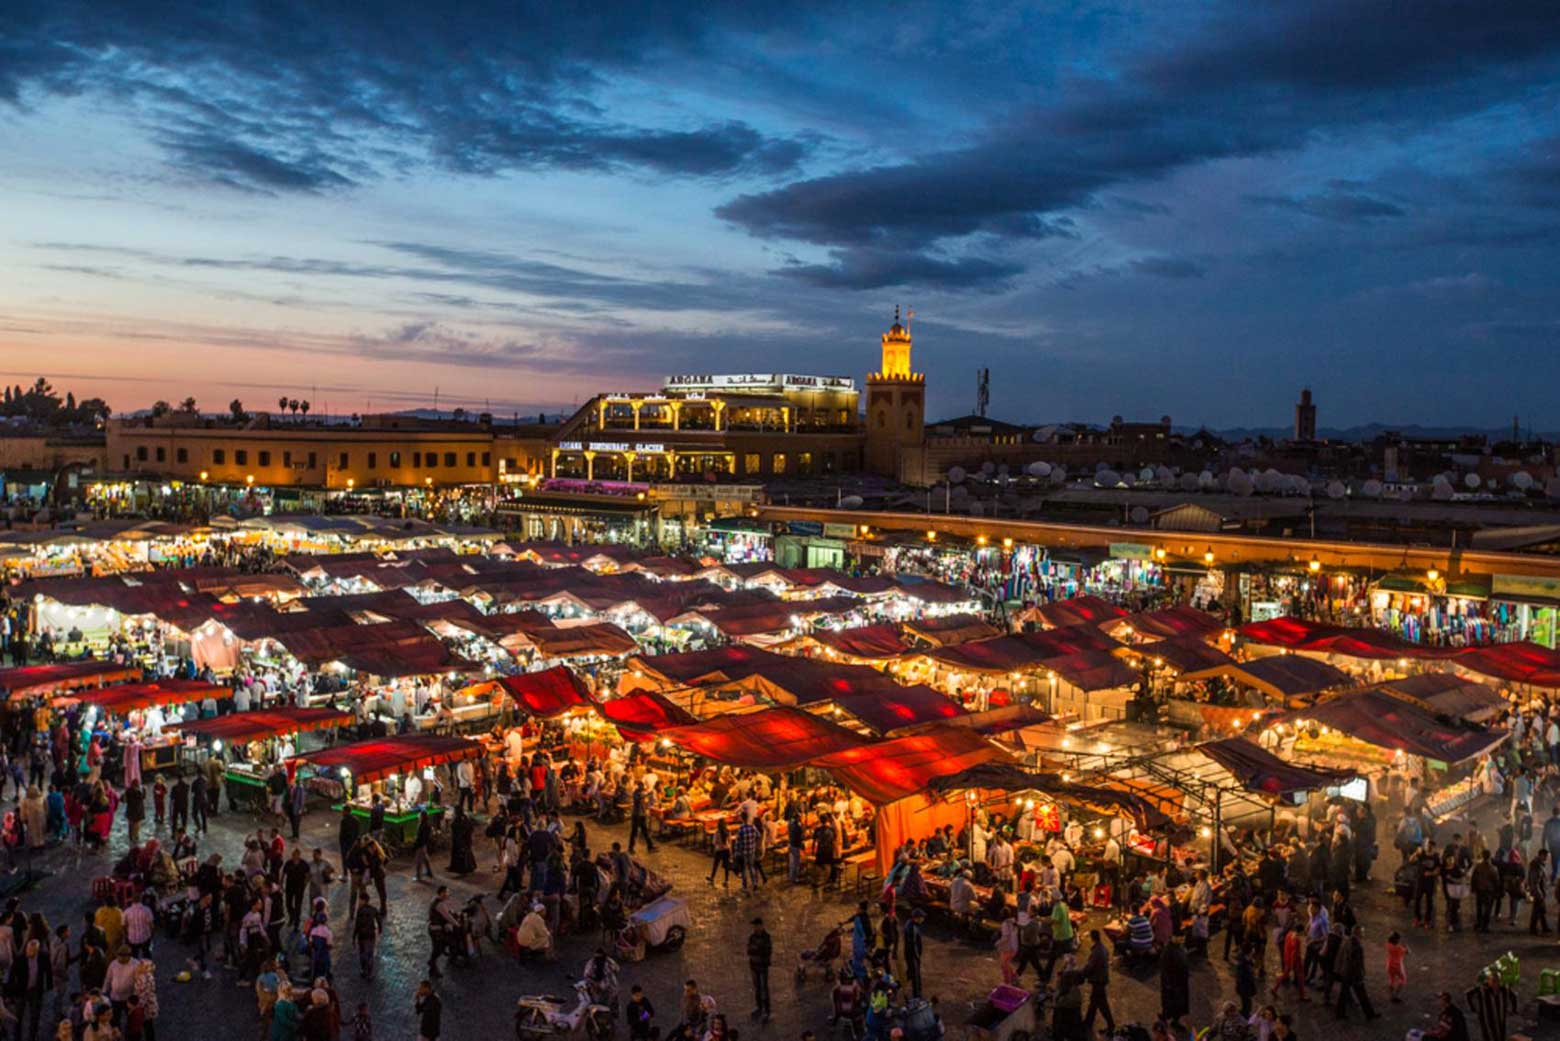 Découvrez la meilleure sélection de riads de Marrakech